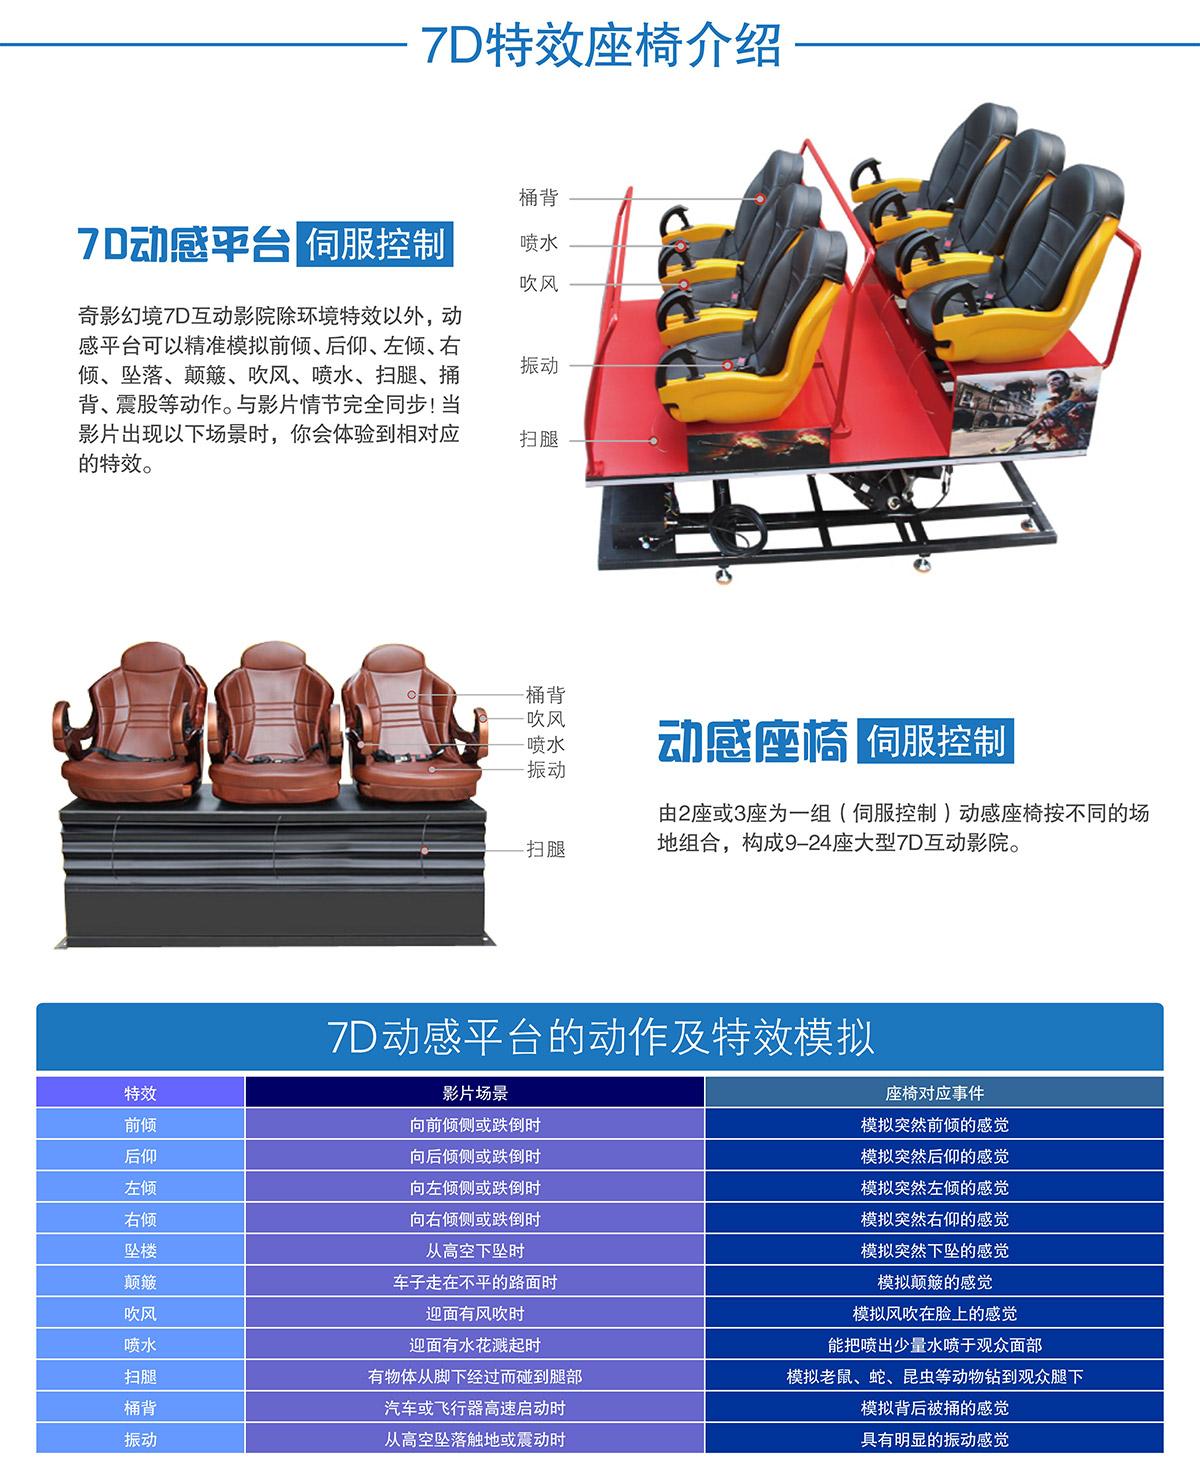 地震7D特效座椅介绍.jpg